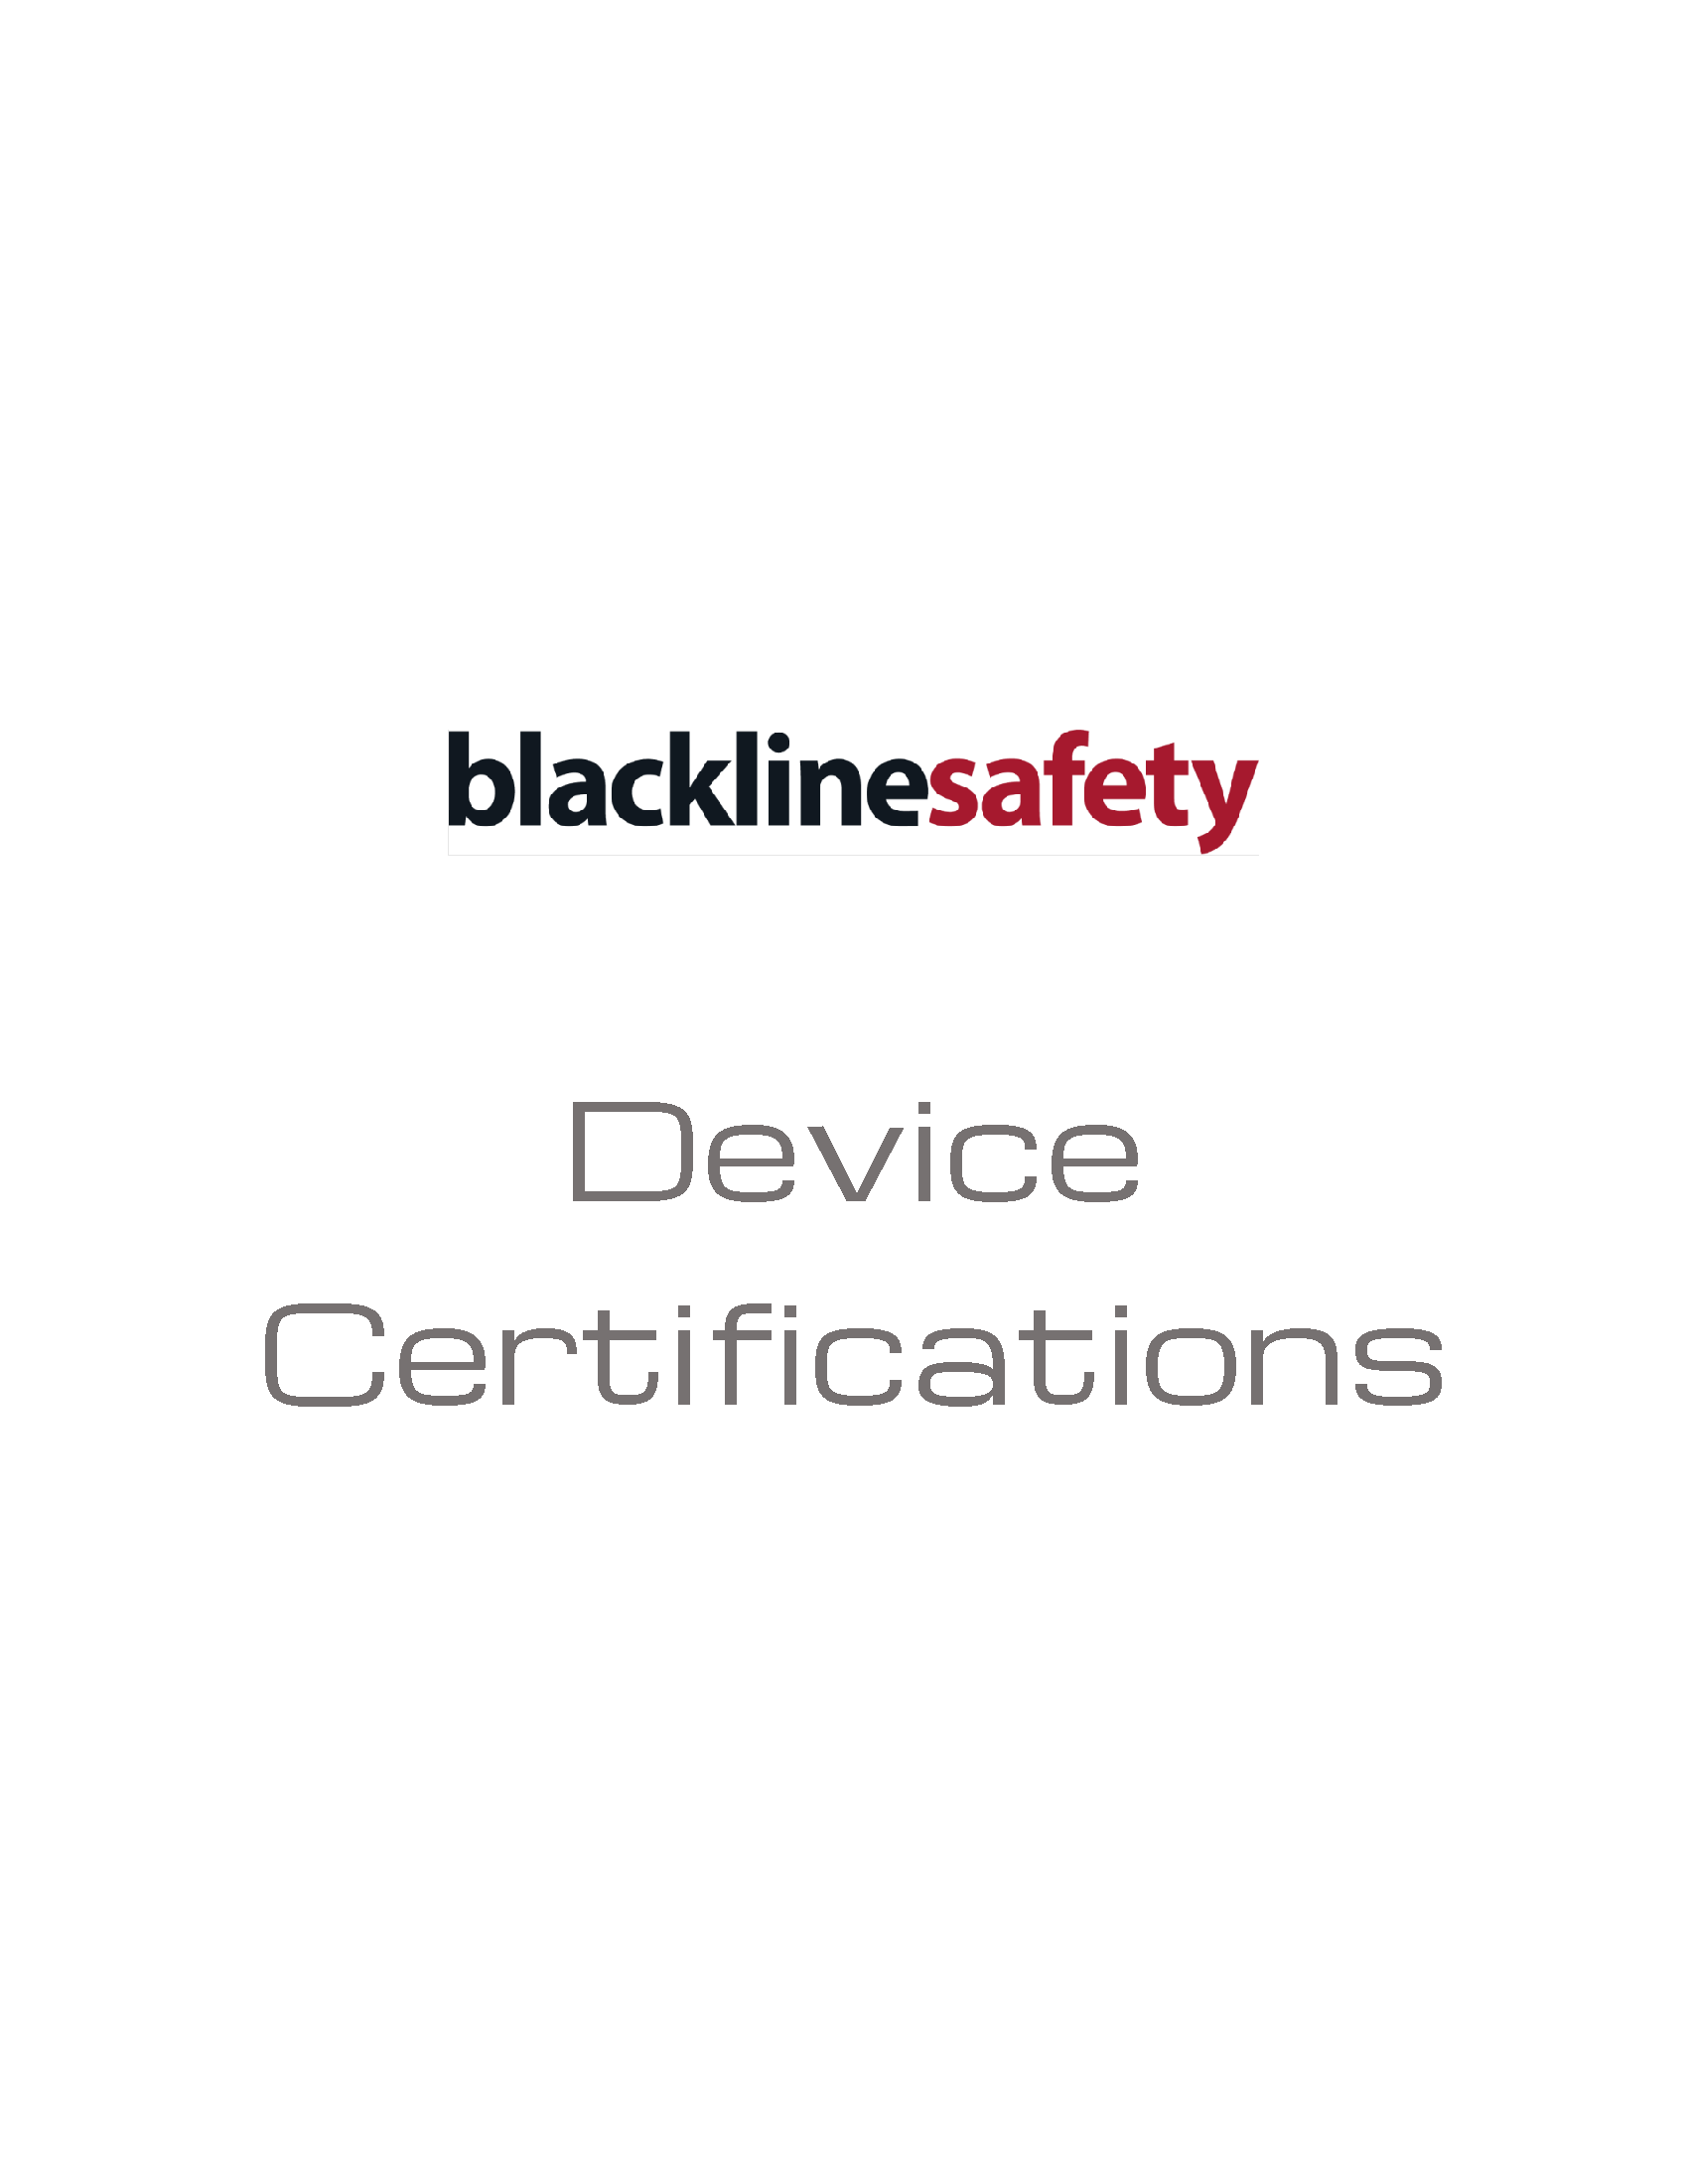 Immagine delle certificazioni dei dispositivi